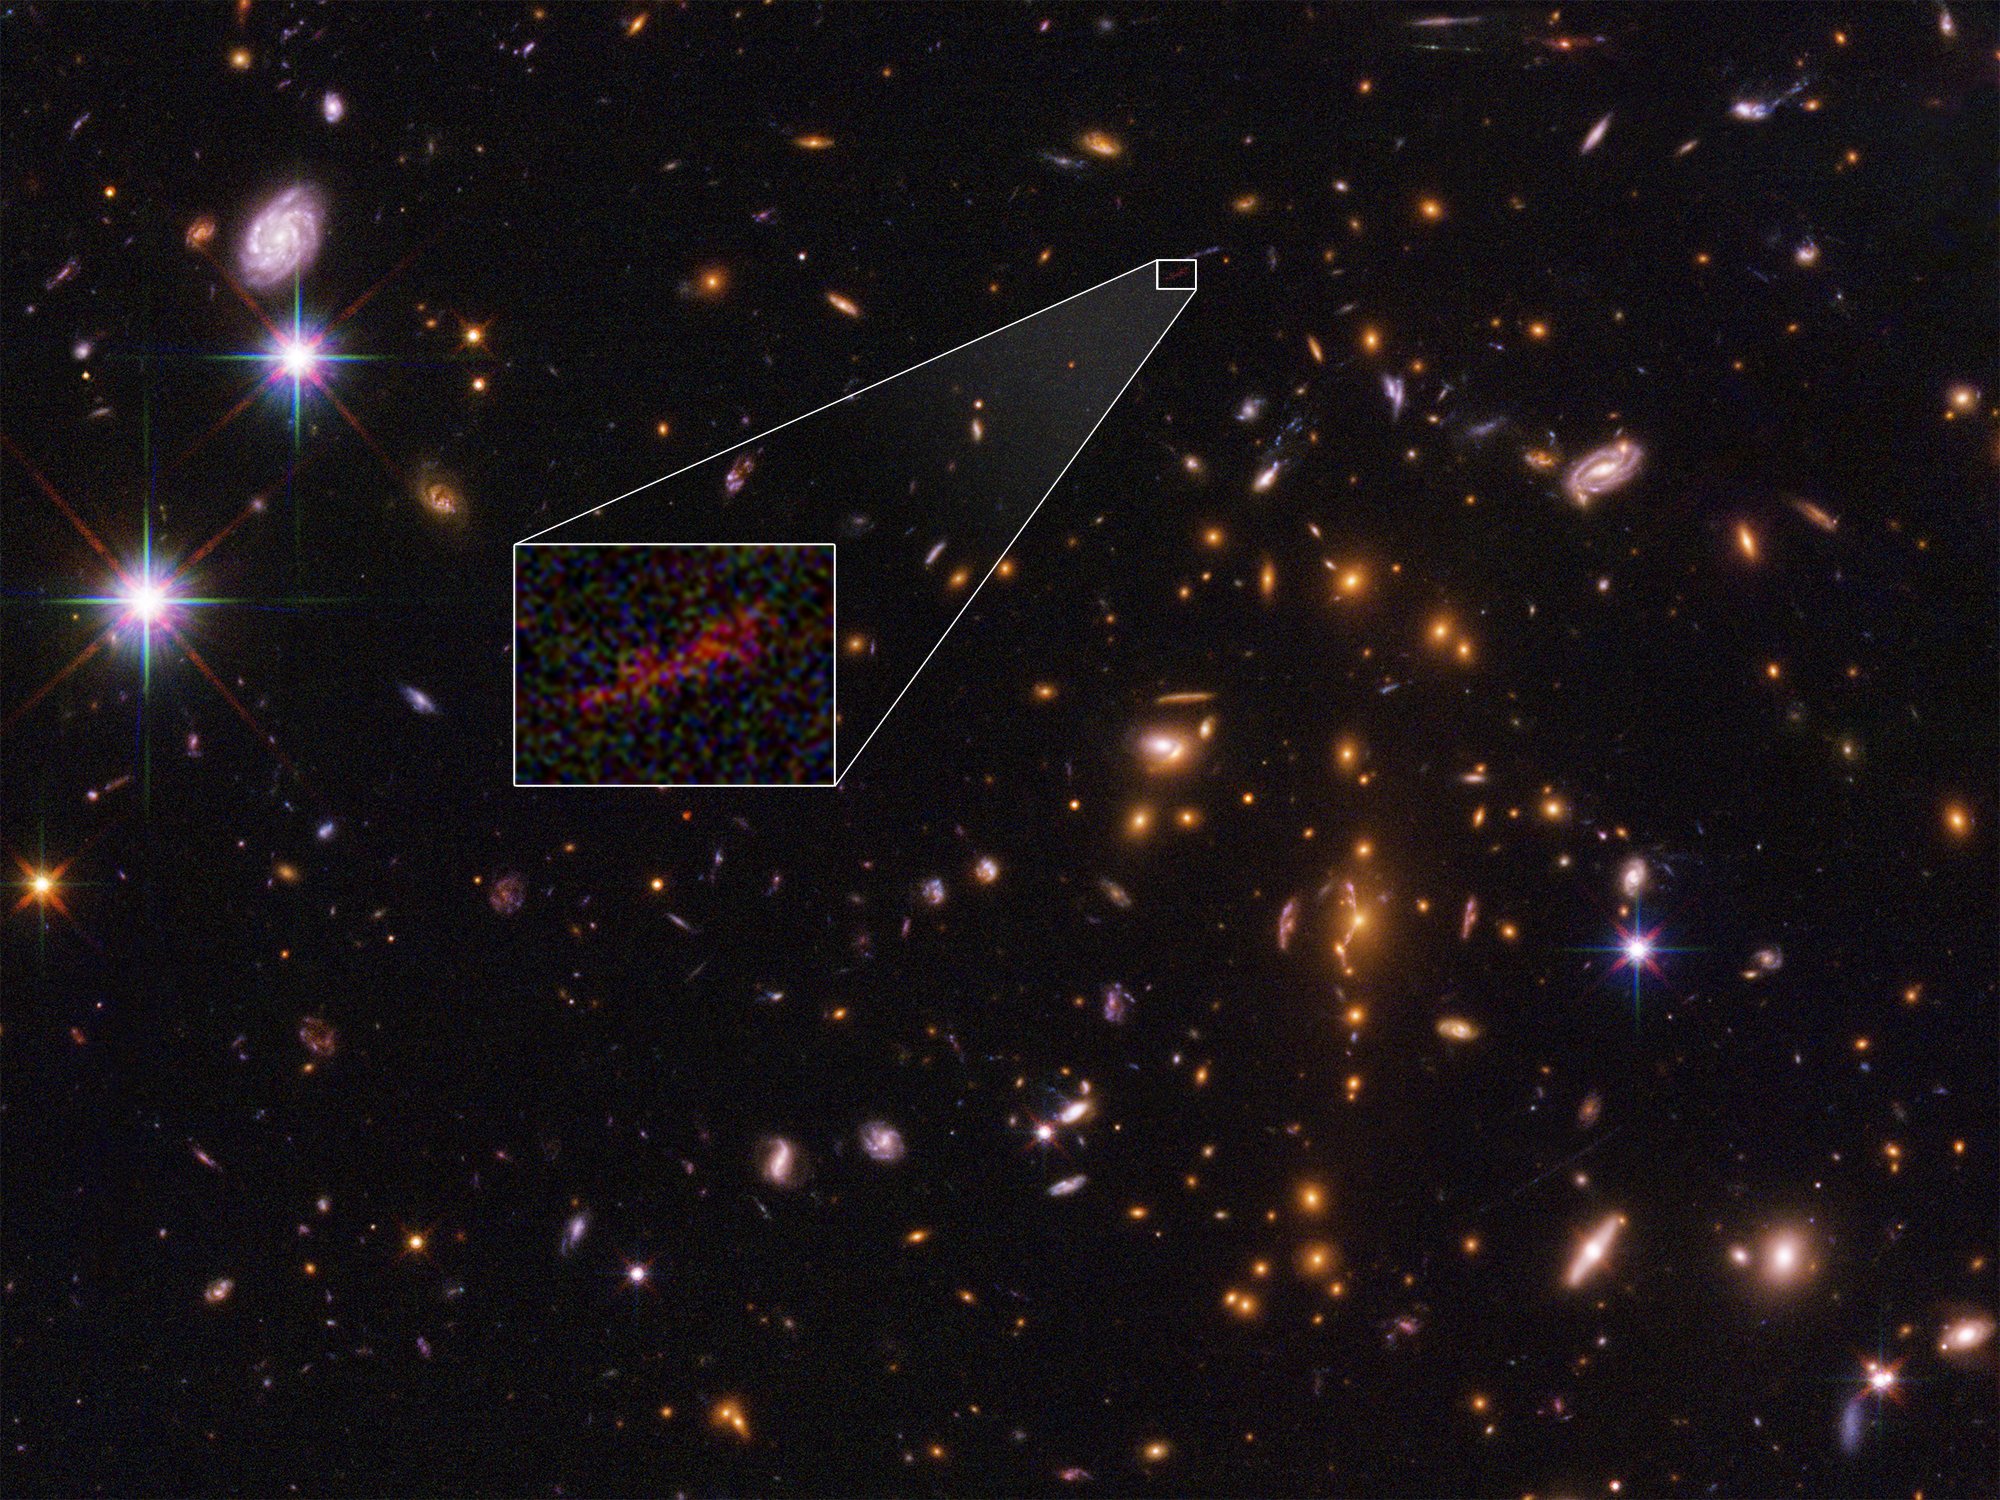 Это изображение космического телескопа Хаббла самой дальней галактики, которое все же видно на изображении, растянутом и усиленном с помощью явления, называемого гравитационным линзированием. Эмбриональная галактика под названием SPT0615-JD существовала, когда вселенной было всего 500 миллионов лет. Хотя в эту раннюю эпоху было замечено несколько других примитивных галактик, они по существу выглядели как красные точки, учитывая их небольшие размеры и огромные расстояния. Однако в этом случае гравитационное поле массивного кластера галактик переднего плана, получившее название SPT-CL J0615-5746, не только усилило свет из фоновой галактики, но и смазало его изображение на дугу (около 2 сек.). Анализ изображения показывает, что галактика весит не более 3 миллиардов солнечных масс (примерно 1/100-й массы нашей полностью выращенной галактики Млечный Путь). Это меньше, чем 2, 500 световых лет в поперечнике, половина размера Малого Магелланового Облака, спутниковая галактика нашего Млечного Пути. Объект считается прототипом молодых галактик, возникших в эпоху вскоре после Большого взрыва.